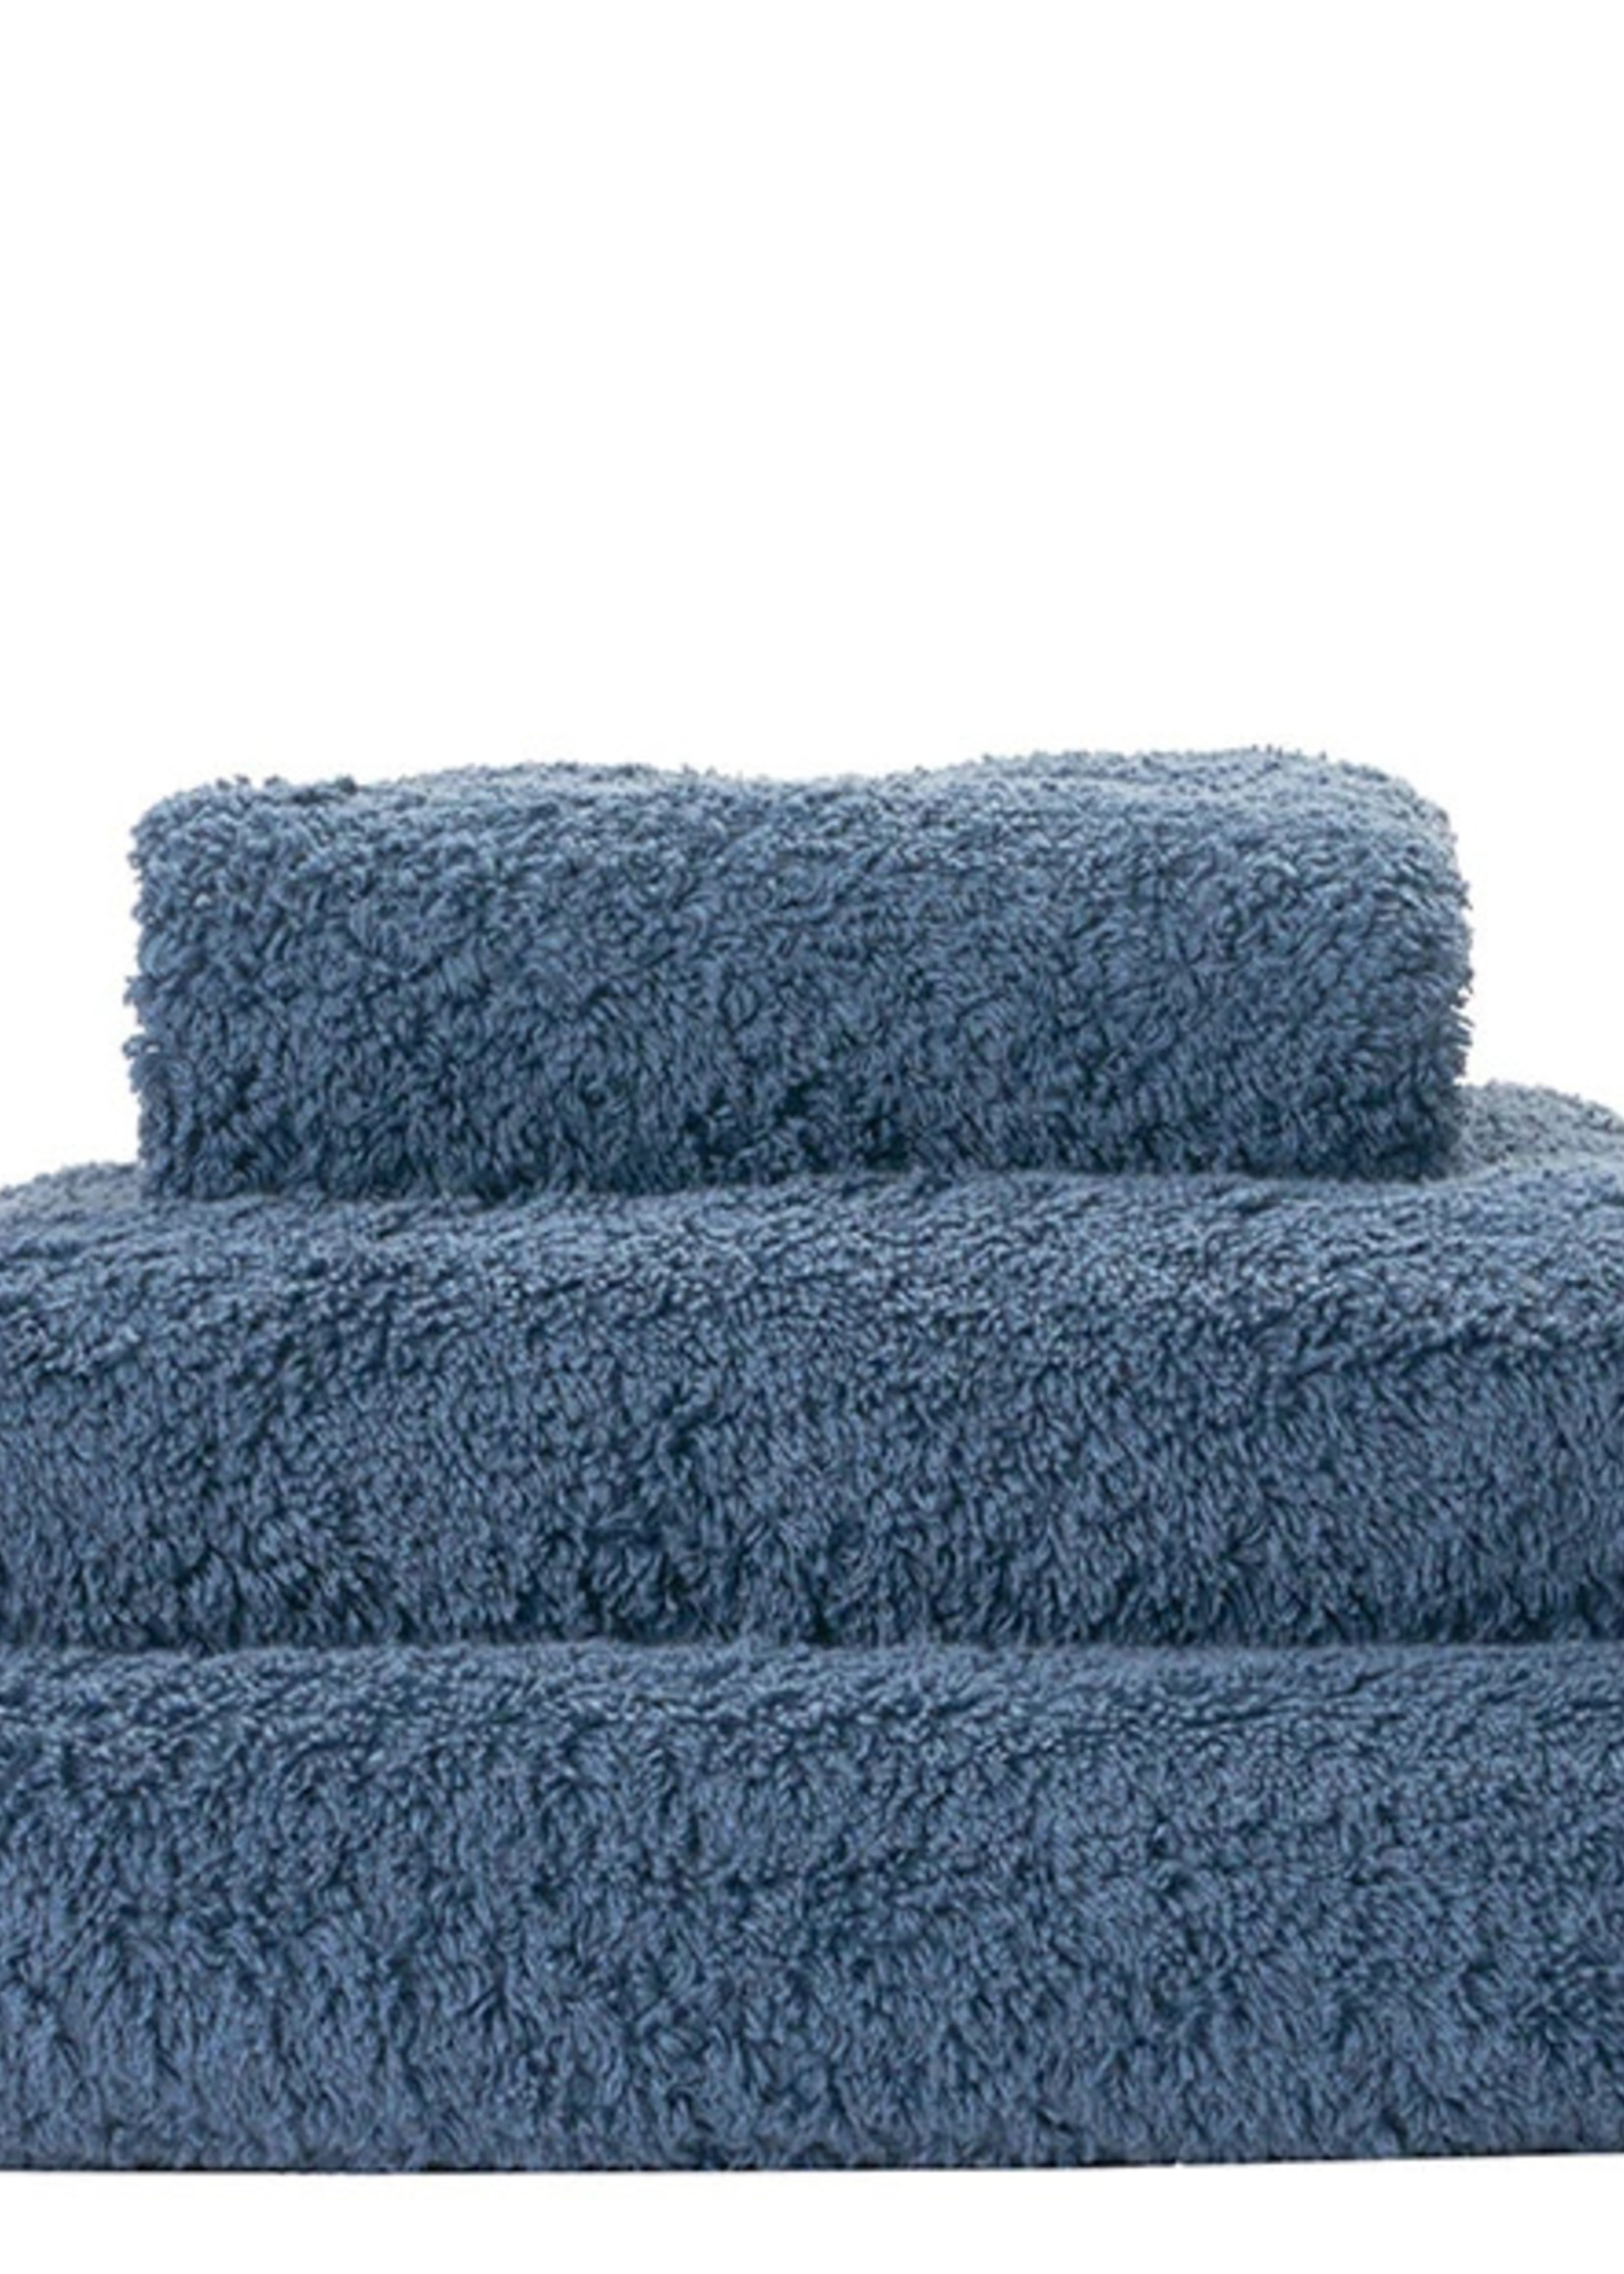 Buy Bamboo Bath Towels (400GSM) Online – Heelium